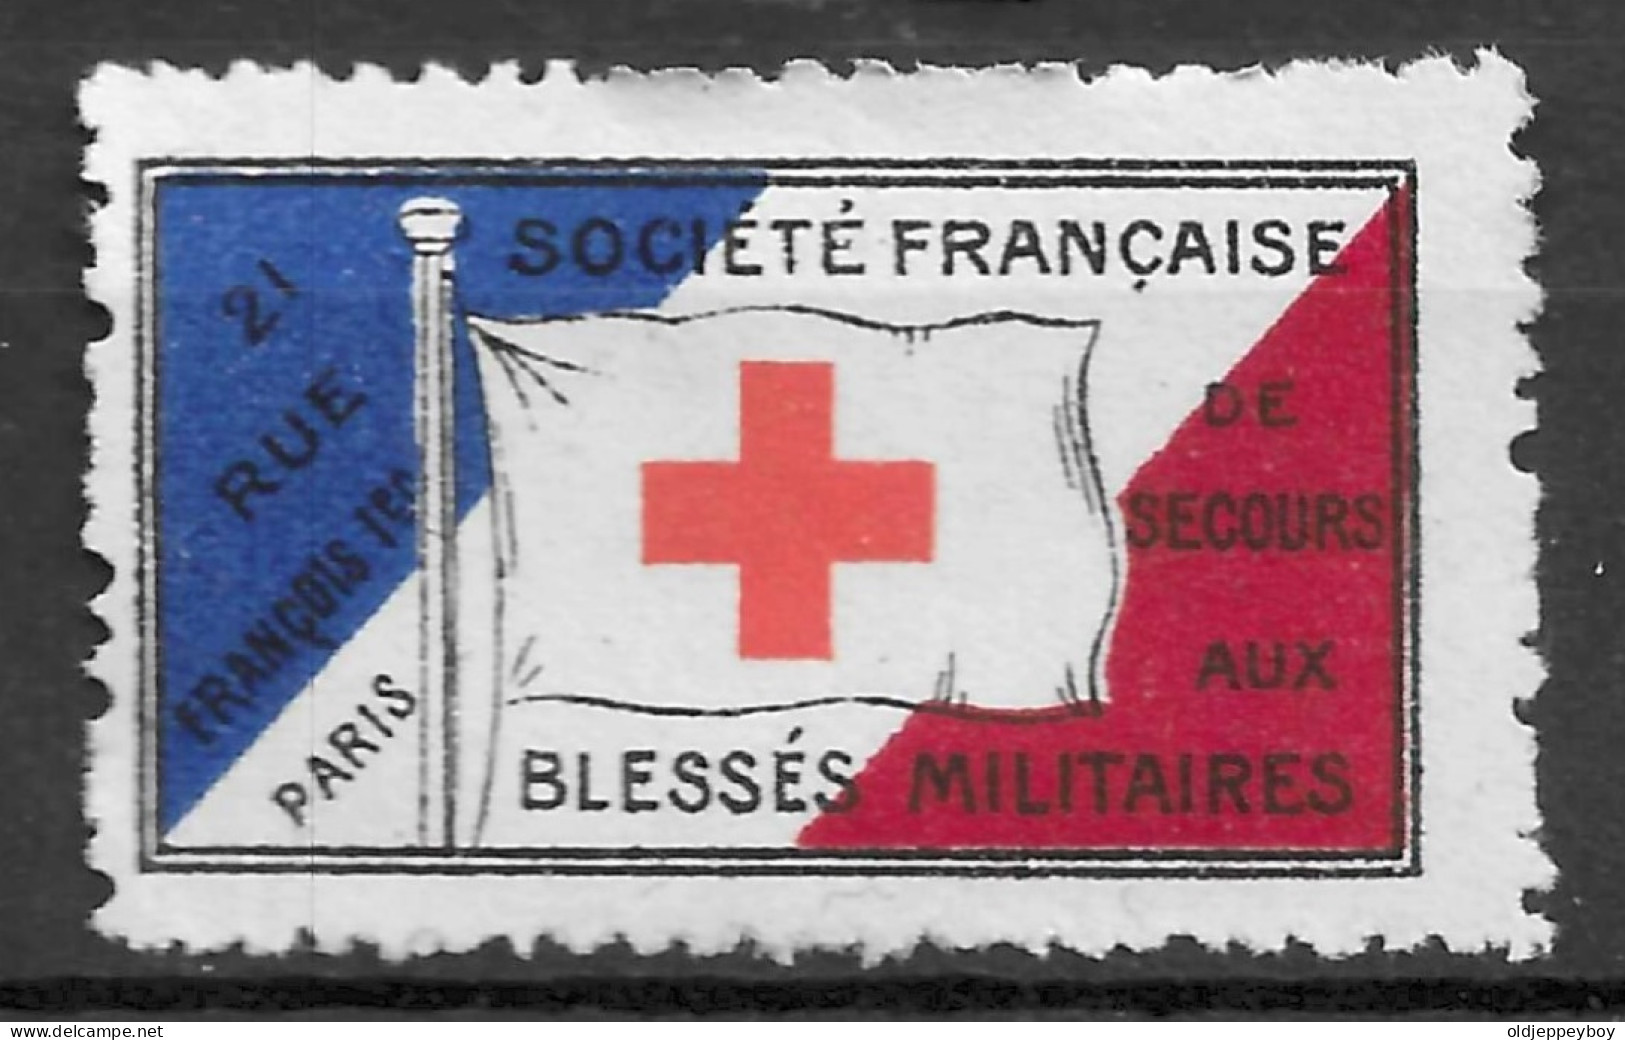 1914-1918 WW1 FRANCE Cinderella Vignette RED CROSS CROIX ROUGE SOCIETE FRANCAISE DE SECOURS AUX BLESSES MILITAIRES - Croce Rossa